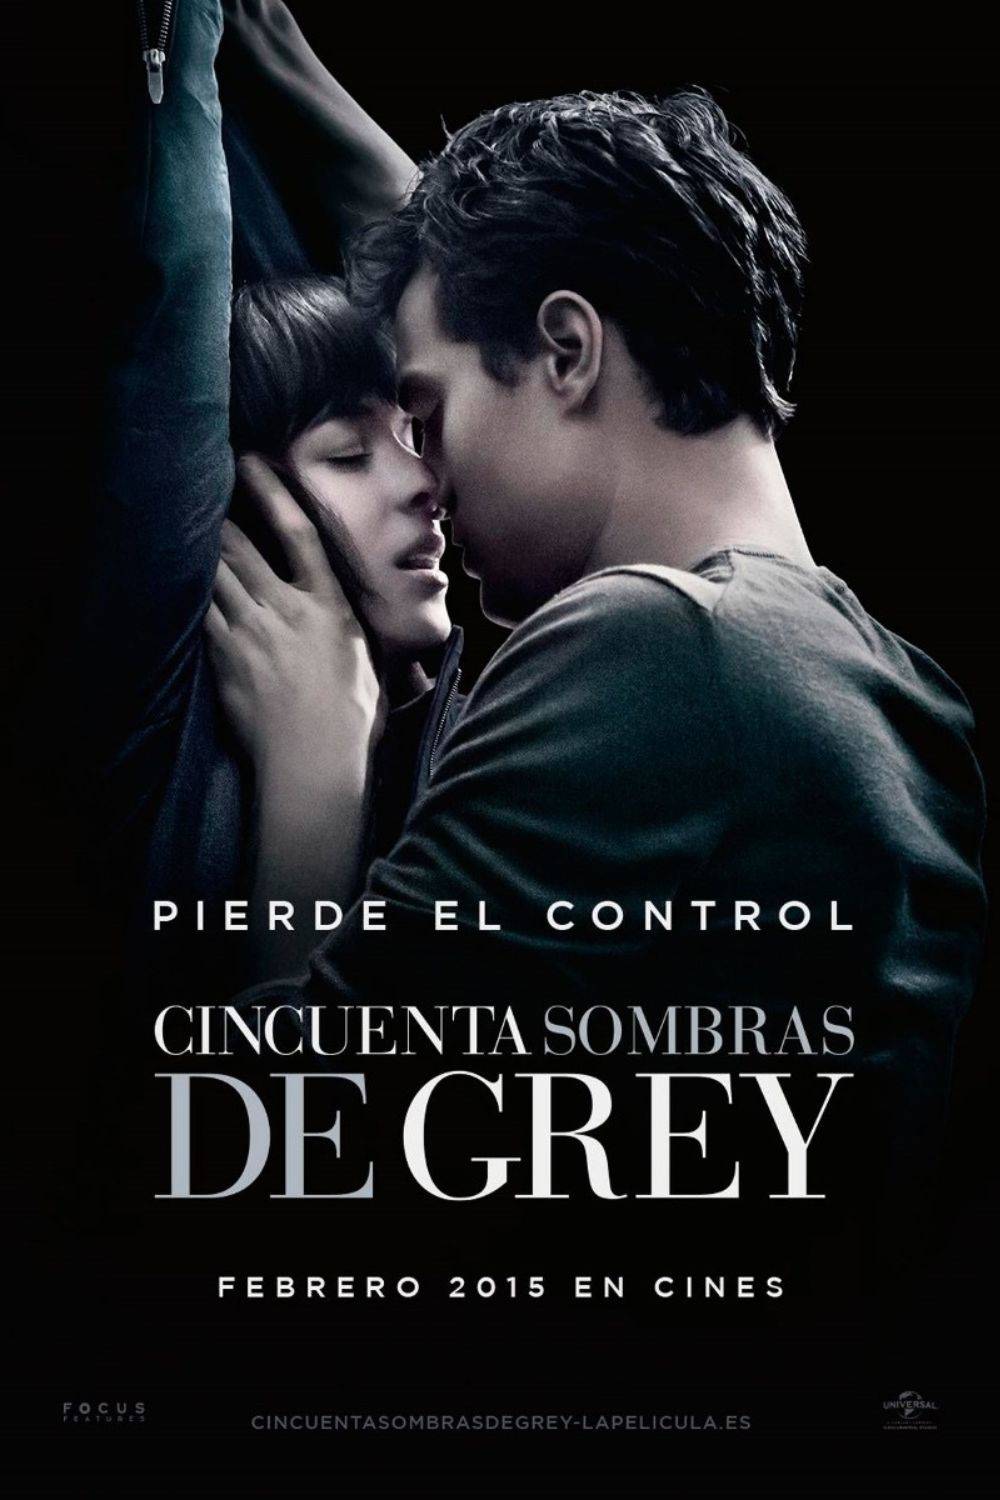 Películas eróticas: cincuenta sombras de grey (2015)